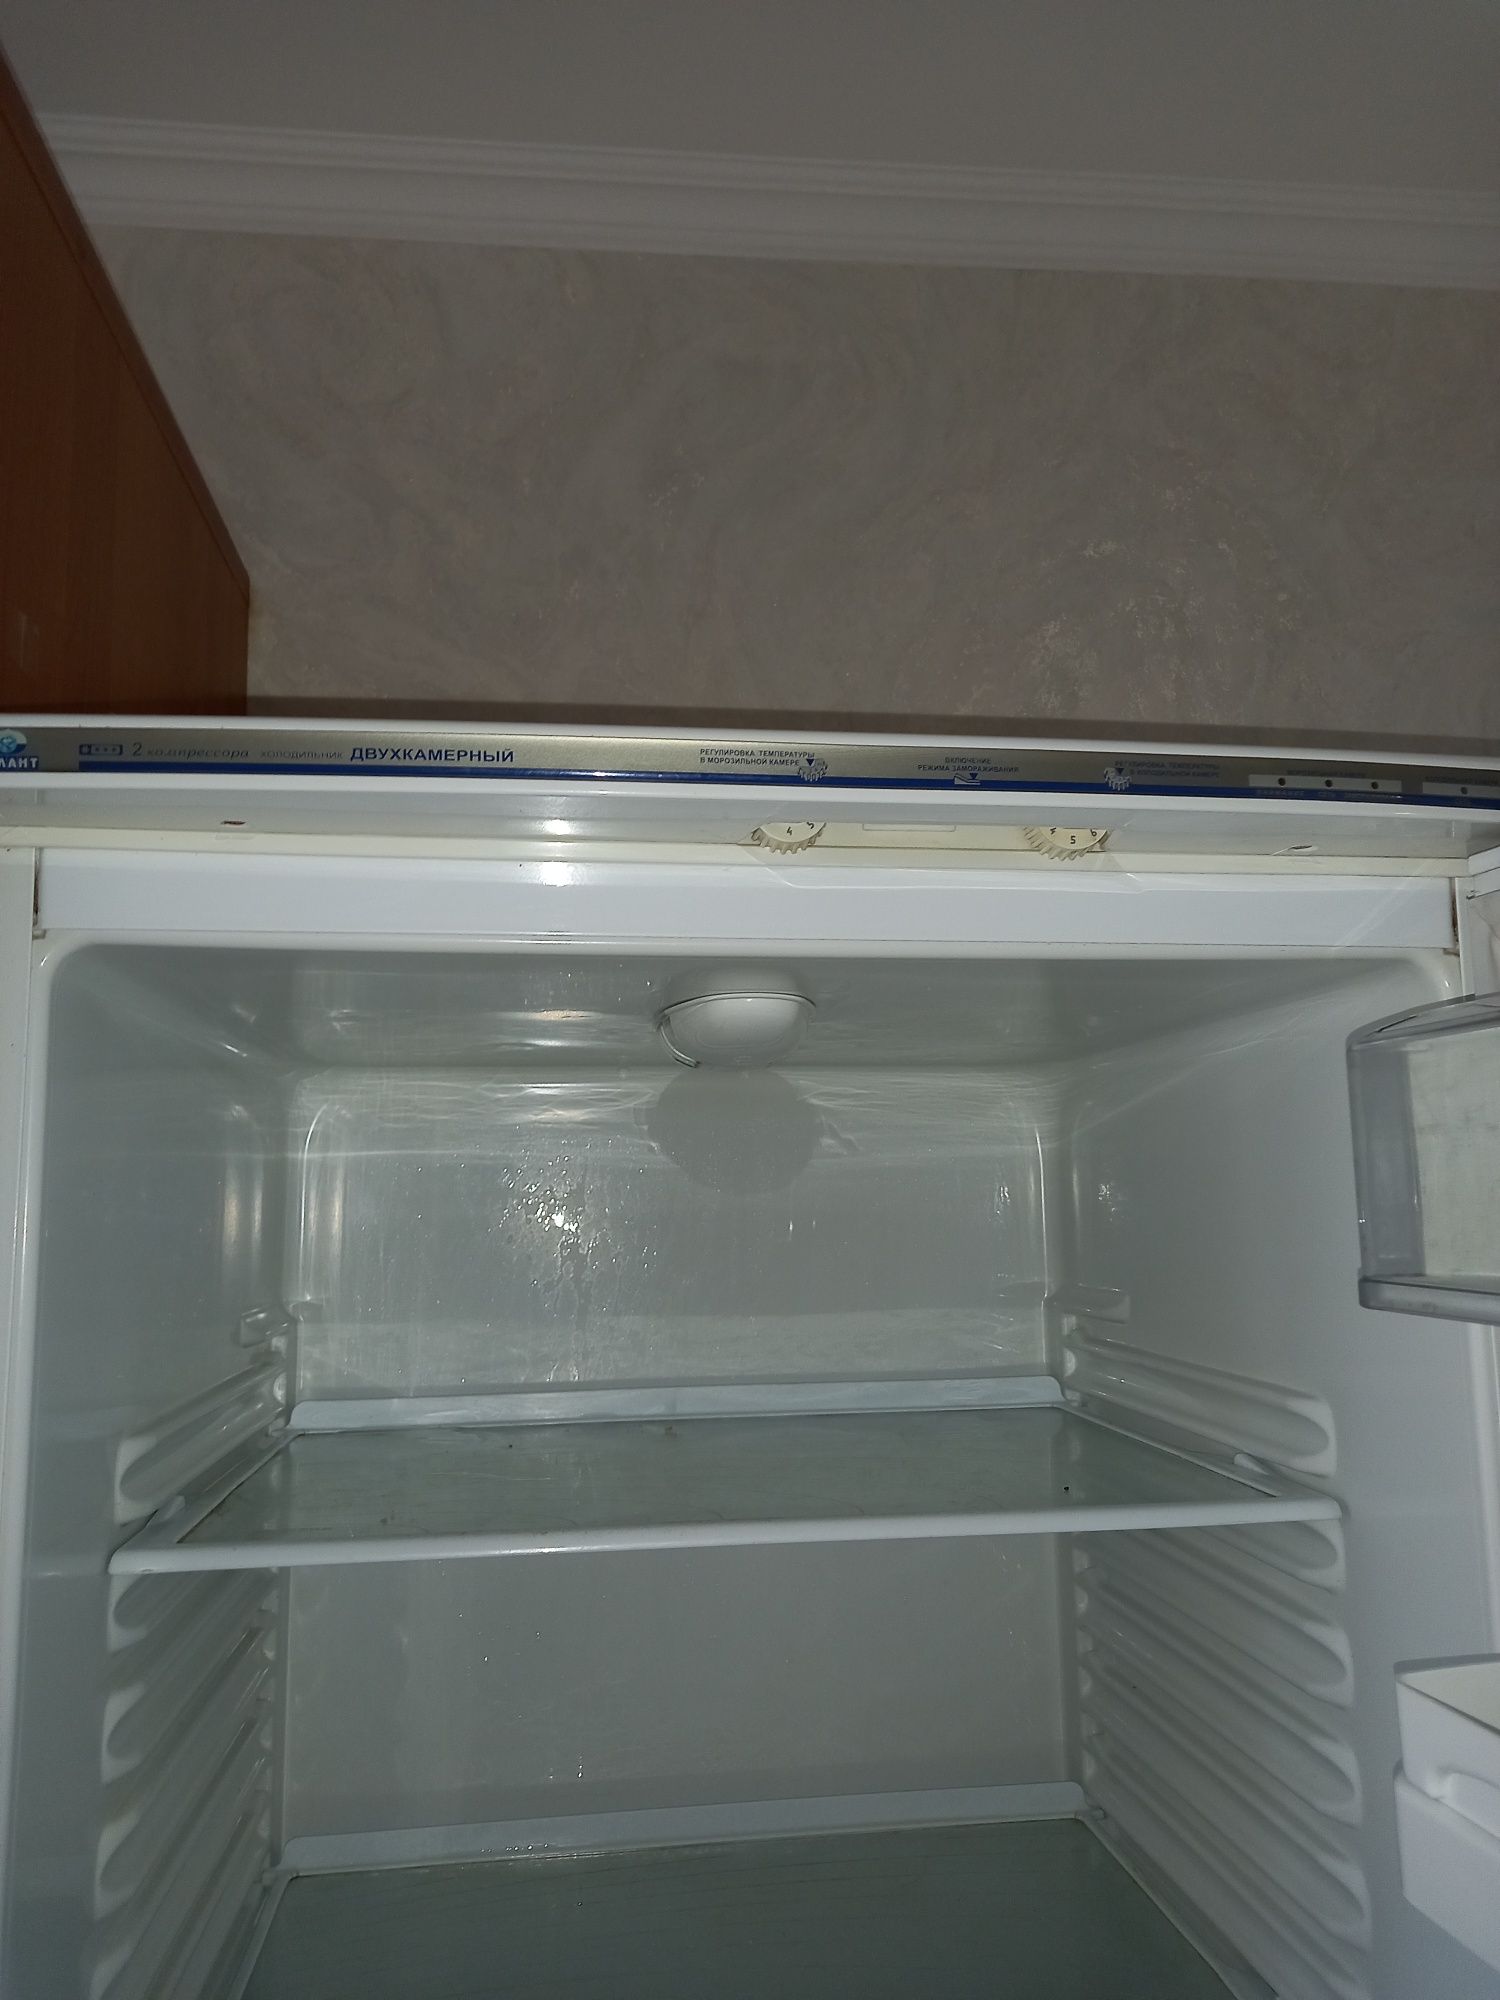 Продаётся легендарный двухкамерный холодильник Атлант б/у